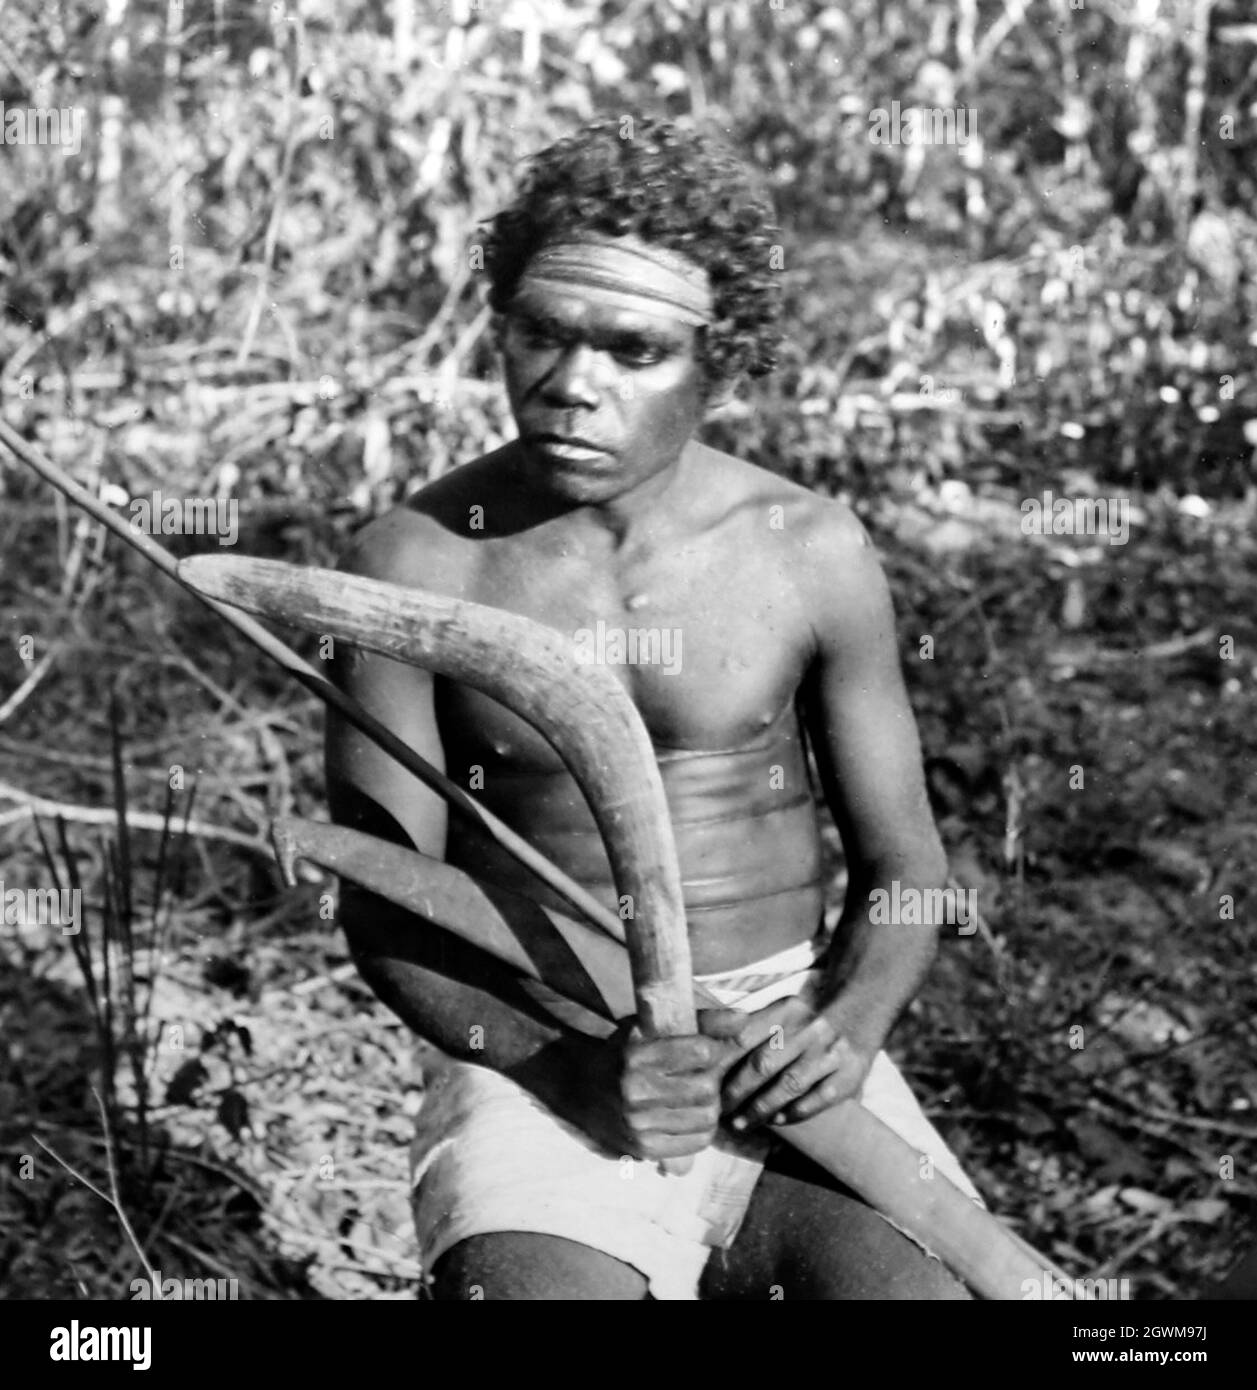 Homme aborigène, Australie, époque victorienne Banque D'Images